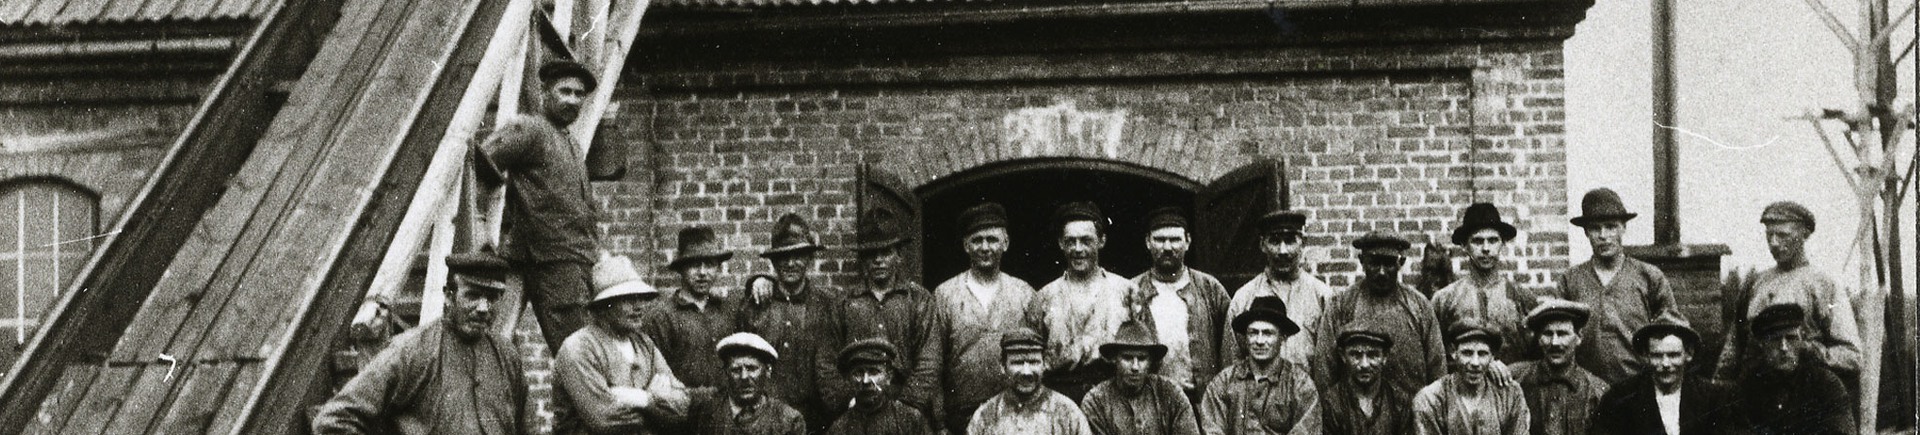 En grupp med män, alla arbetare, står uppställda framför ingången till industribyggnaden